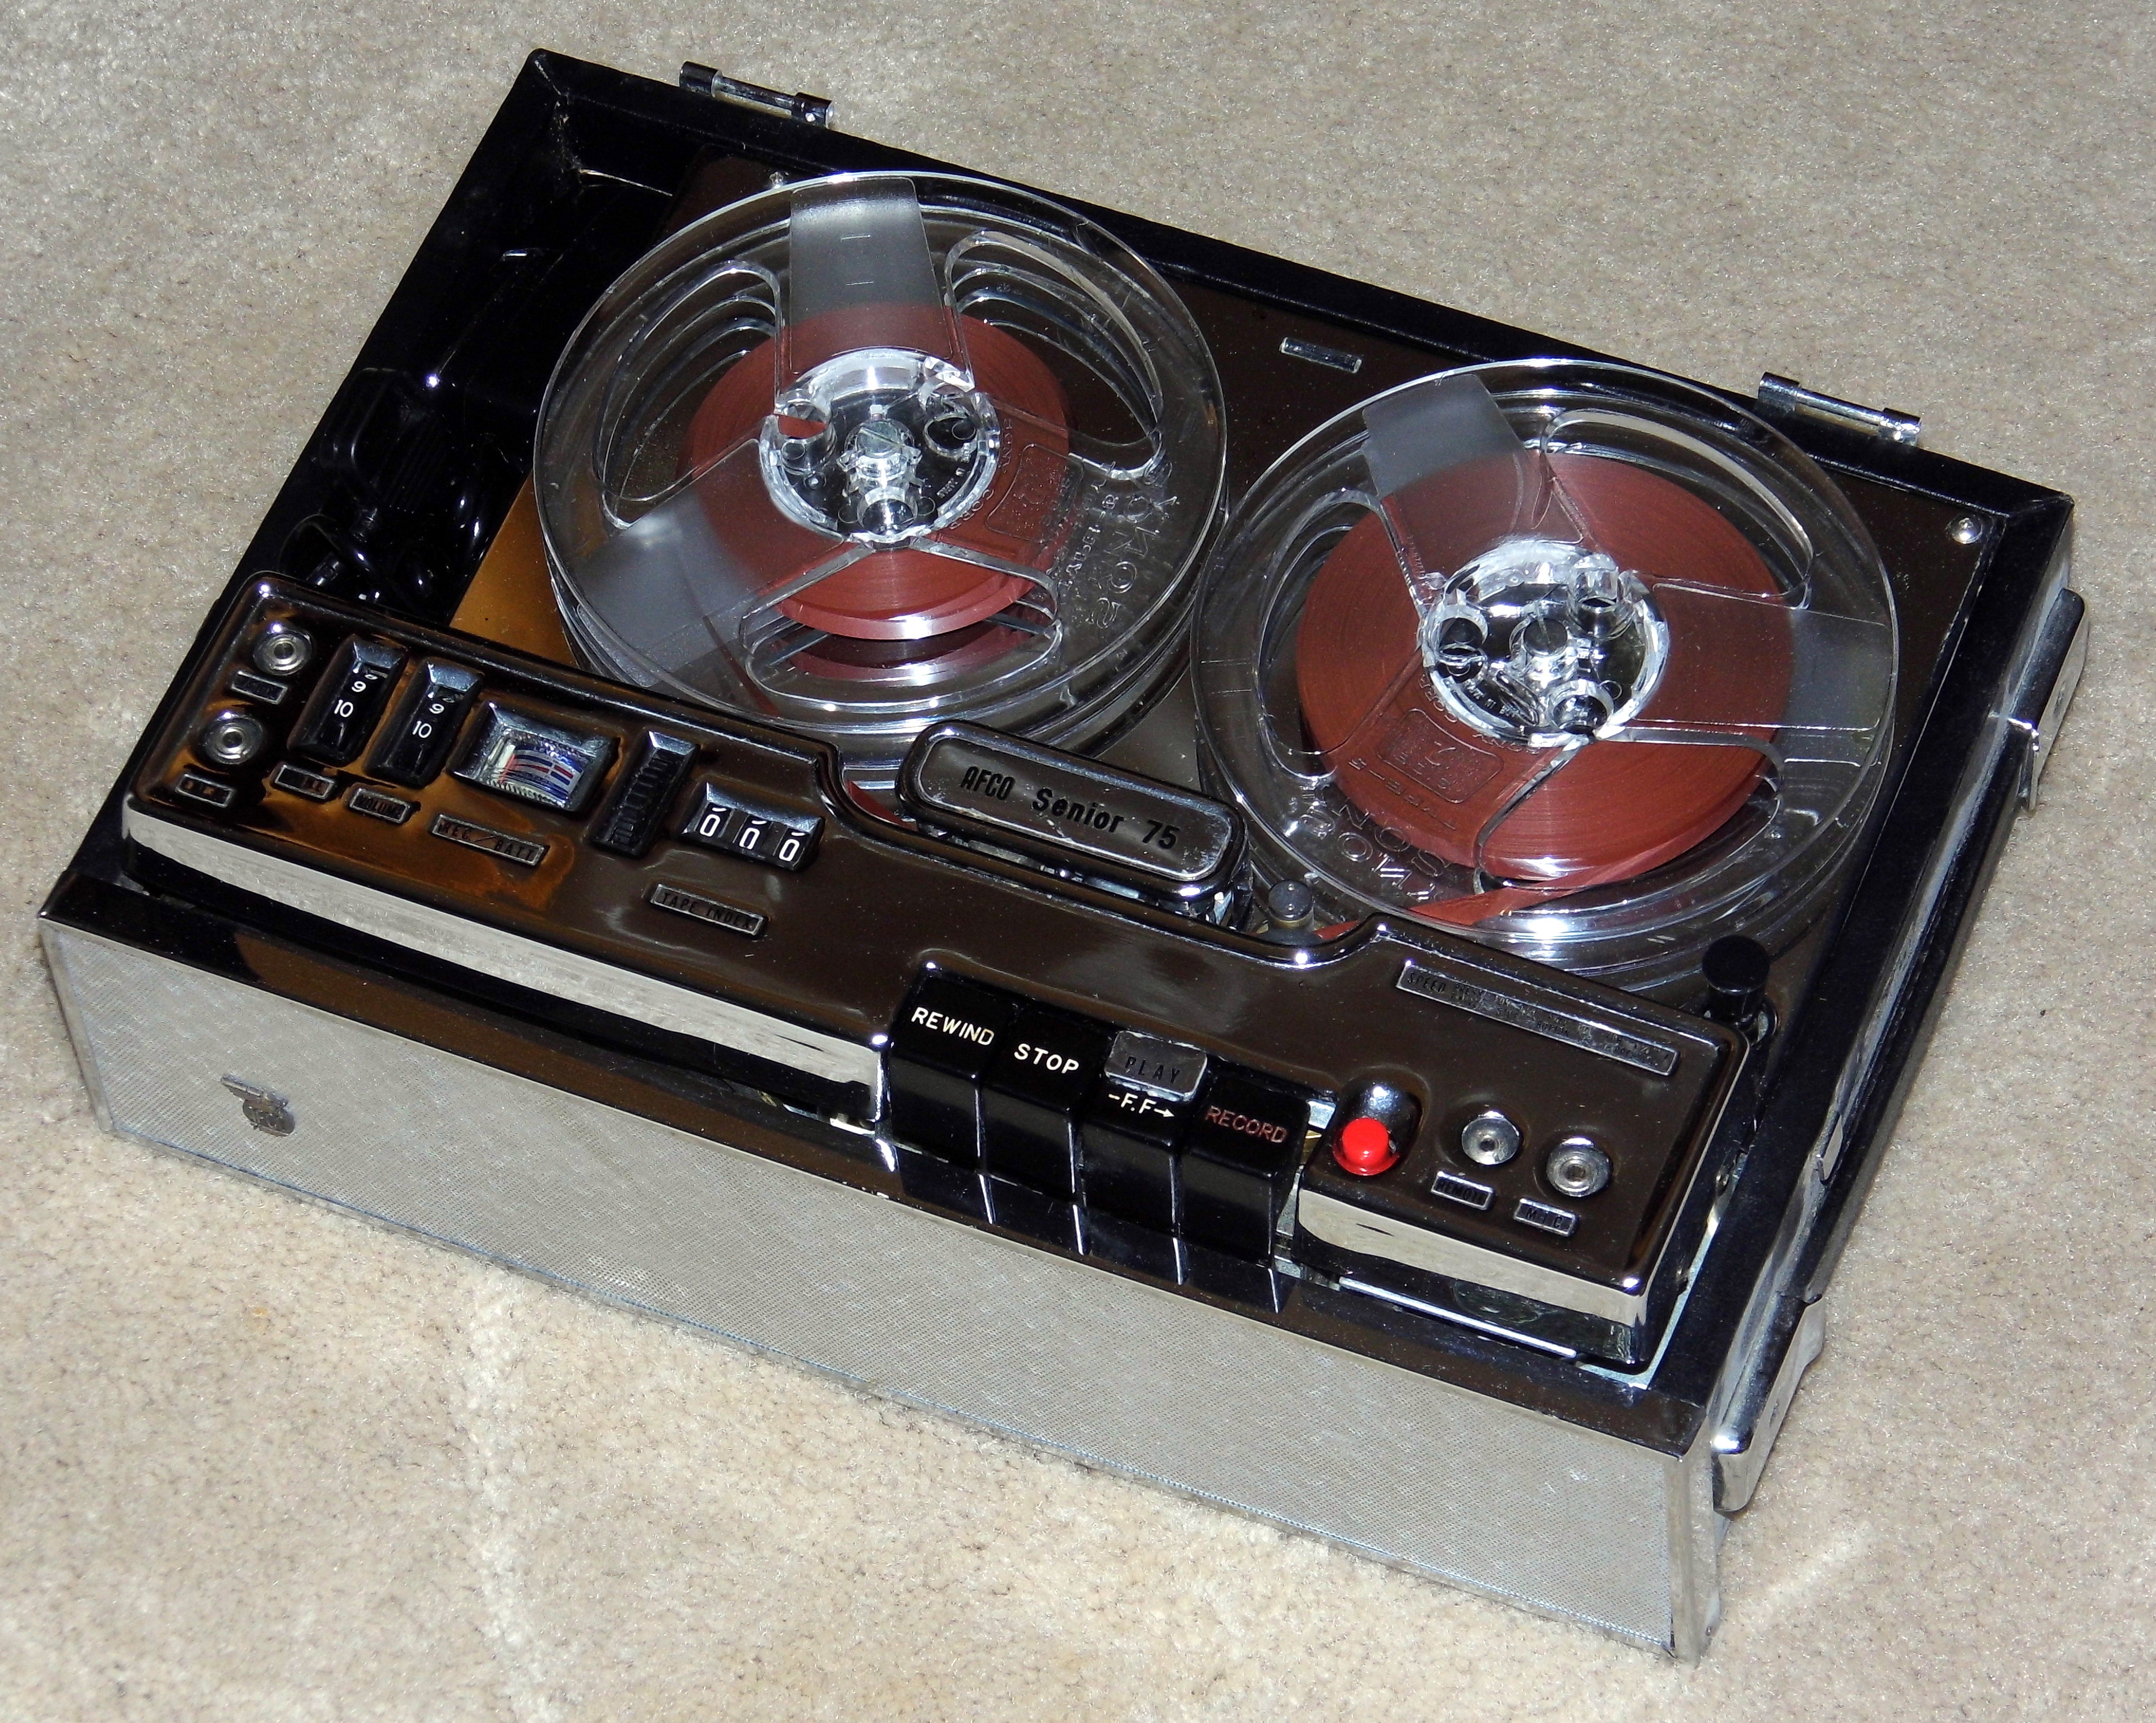 File:Vintage AFCO Senior 75 Reel-To-Reel Tape Recorder, Battery